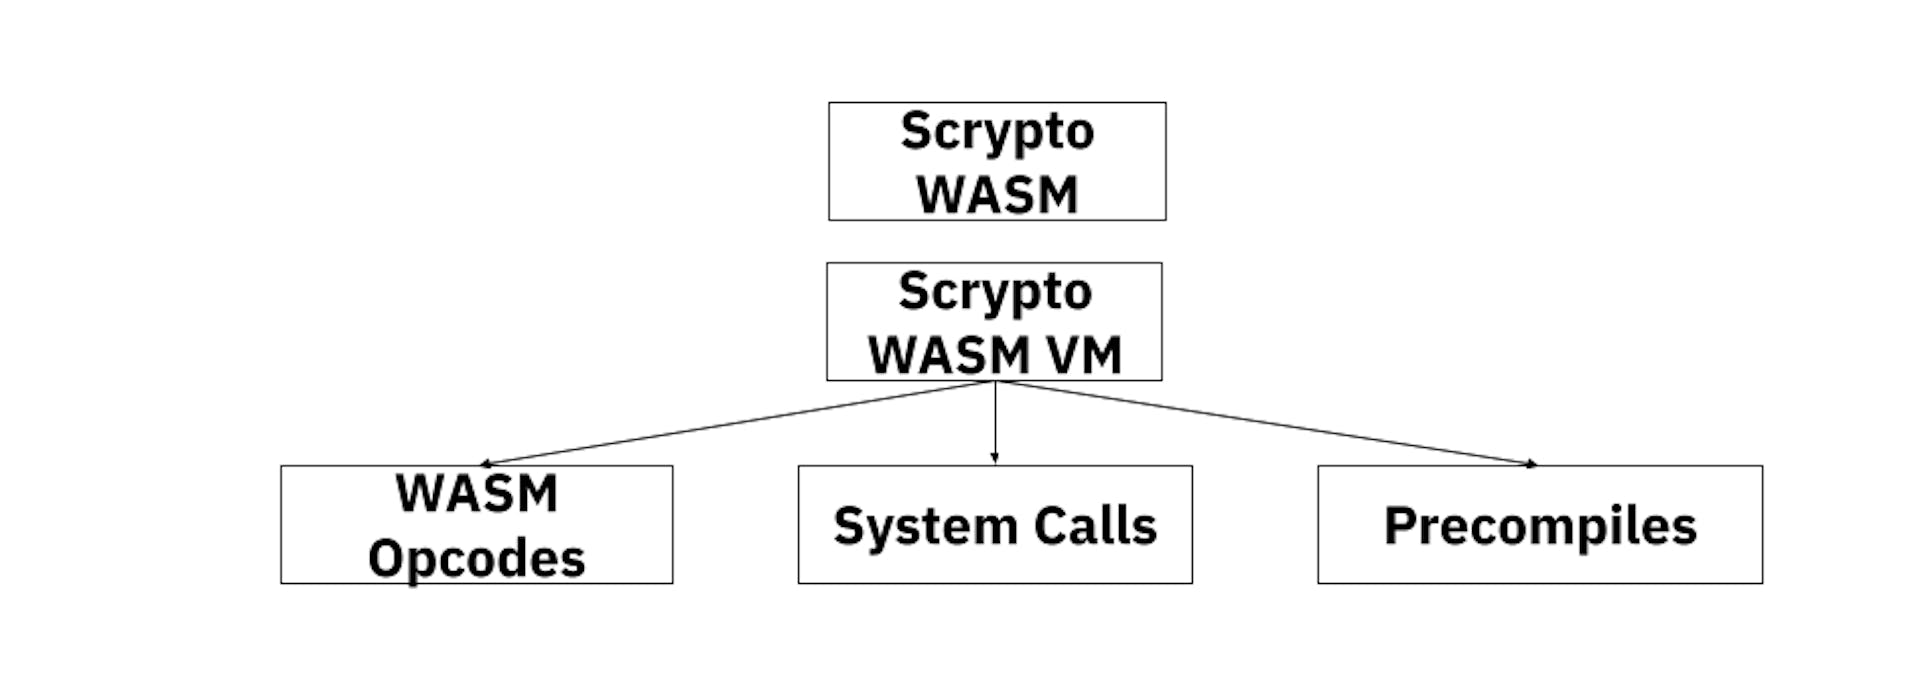 Модель виртуальной машины Scrypto WASM